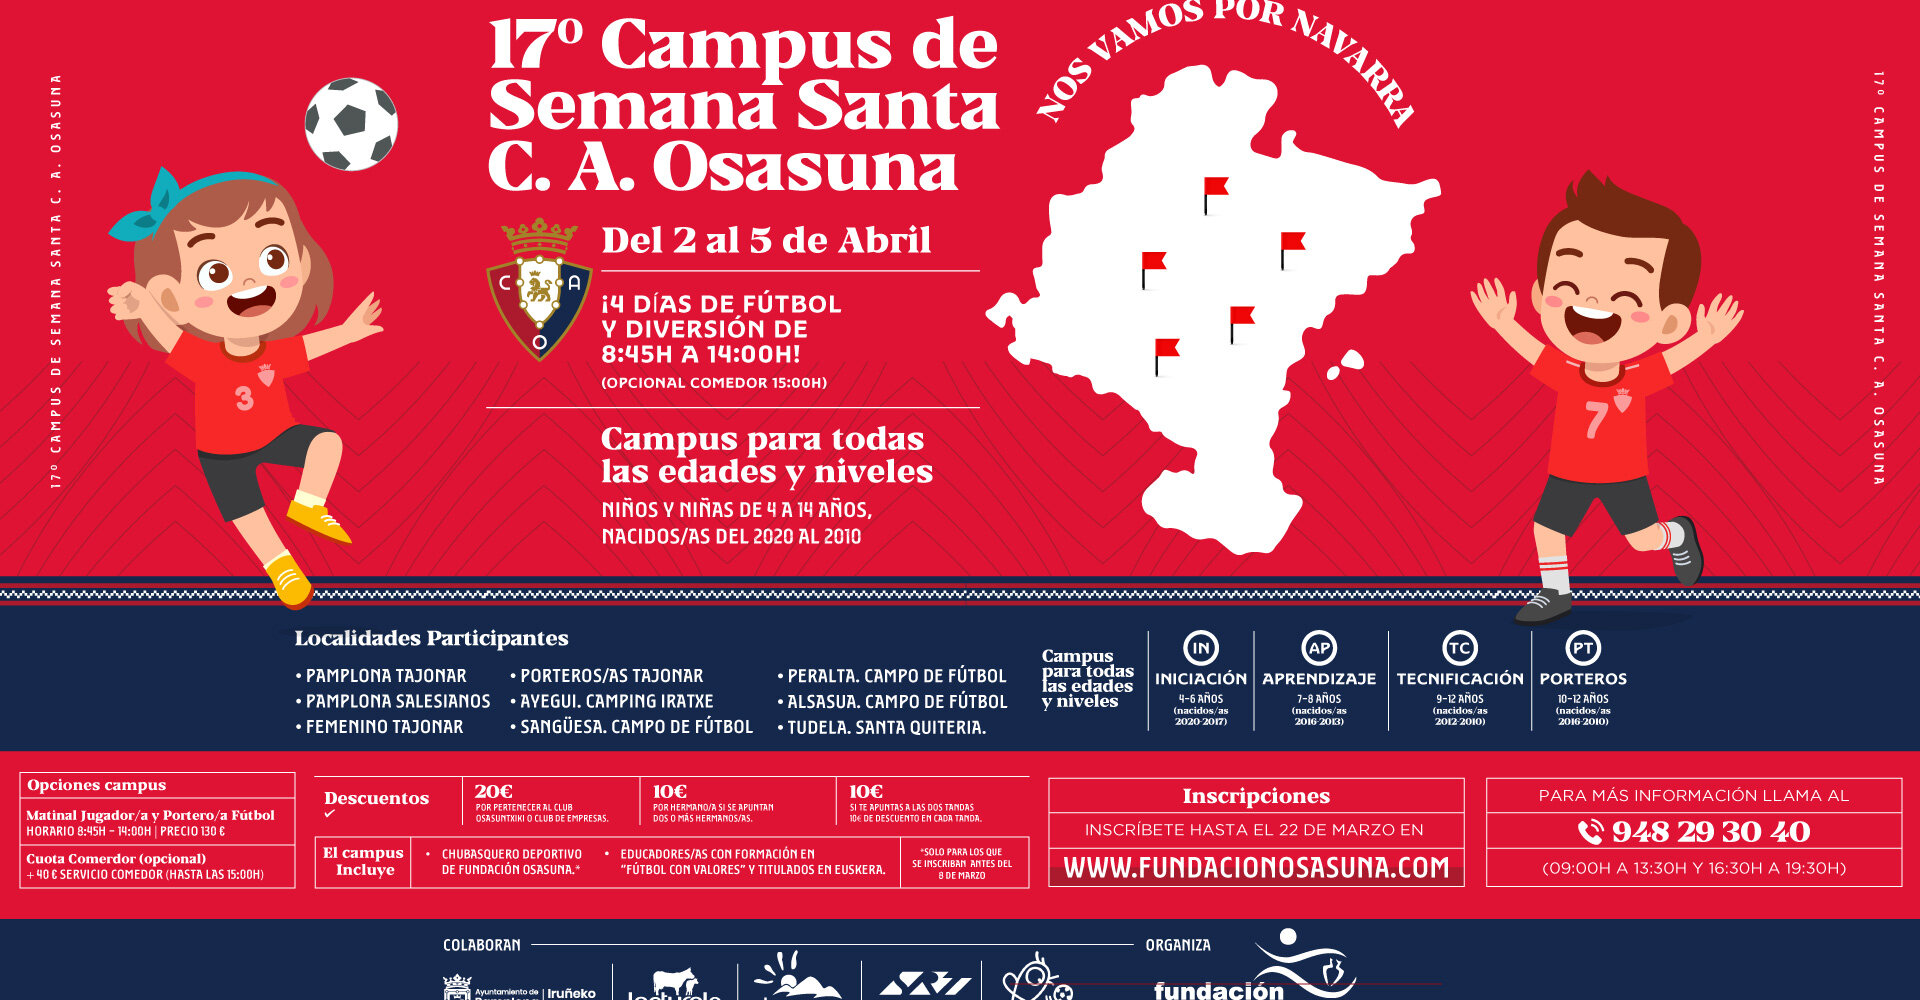 Continúa abierto el plazo de inscripciones del Campus de fútbol de Semana Santa